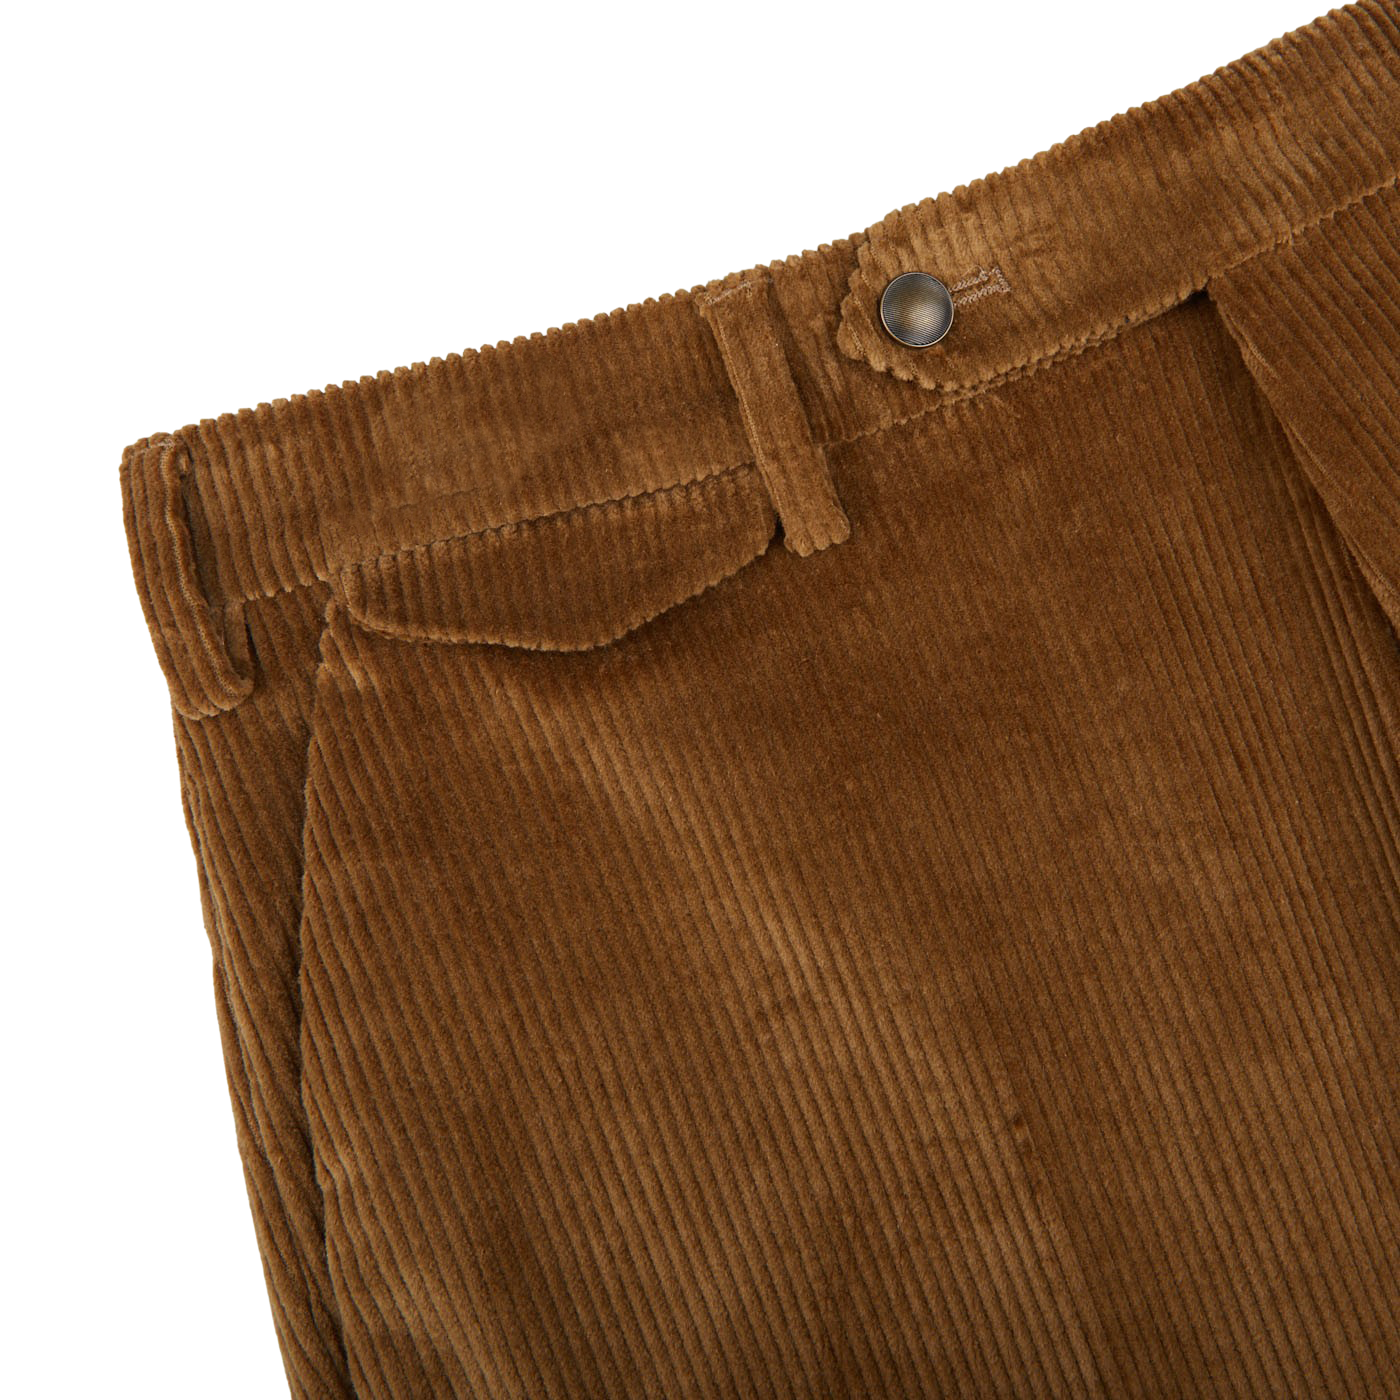 HARIKUNJ Slim Fit Men Khaki Trousers - Buy HARIKUNJ Slim Fit Men Khaki  Trousers Online at Best Prices in India | Flipkart.com